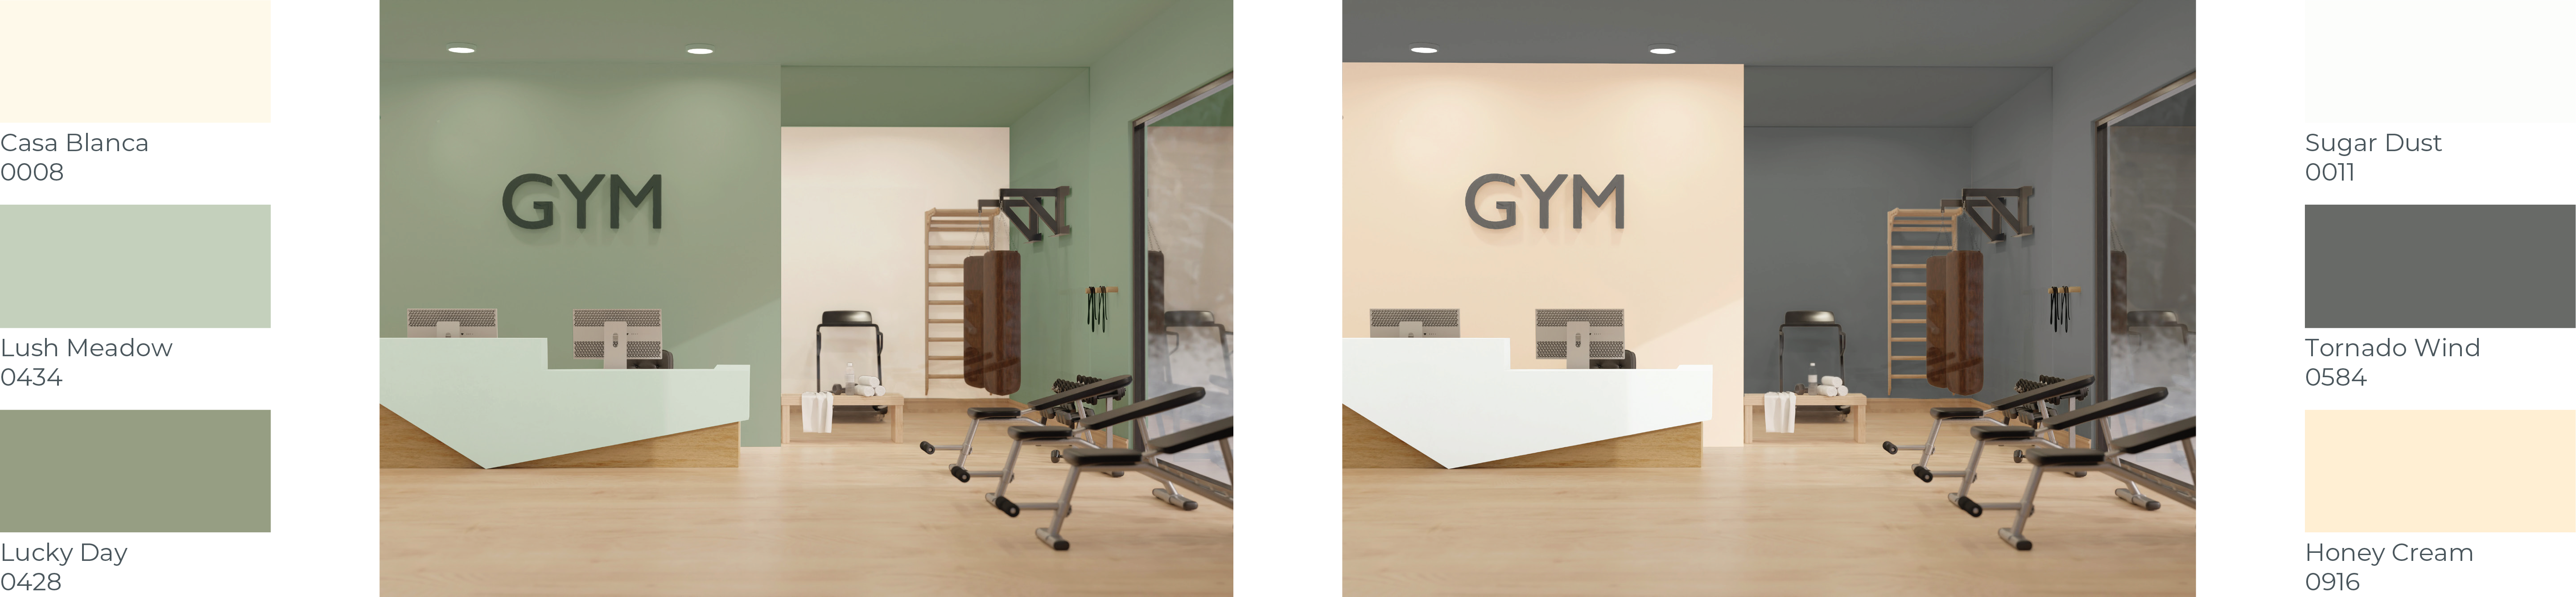 Contemporary gym 2